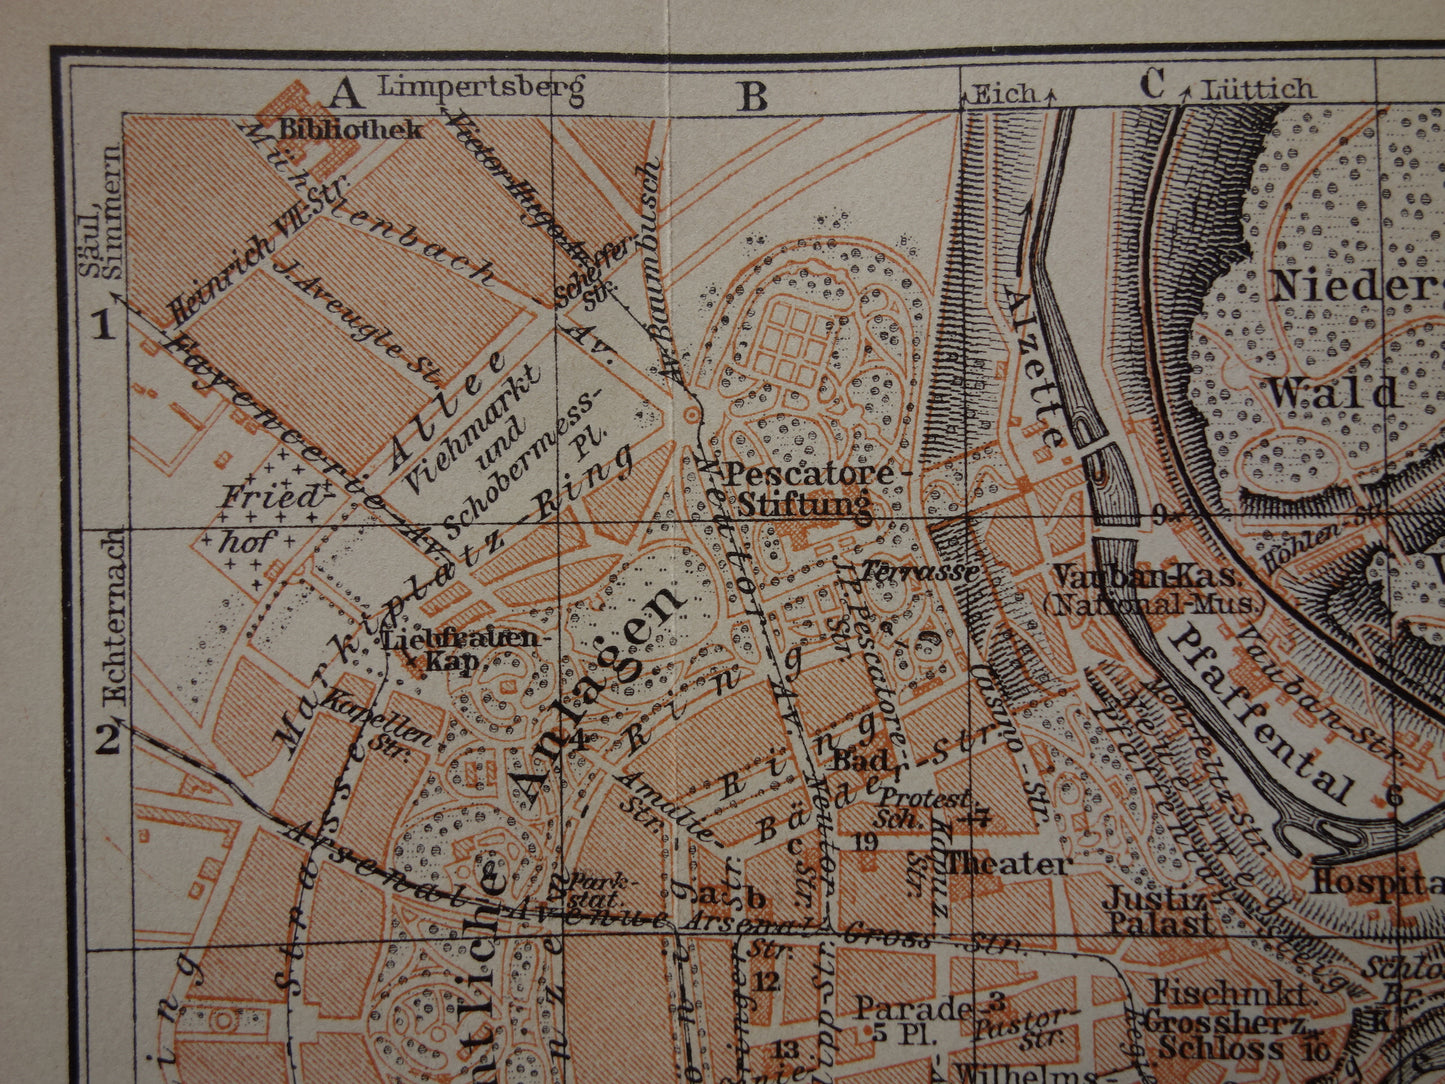 LUXEMBURG oude kaart van Luxembourg Stad uit 1910 kleine originele antieke plattegrond landkaart